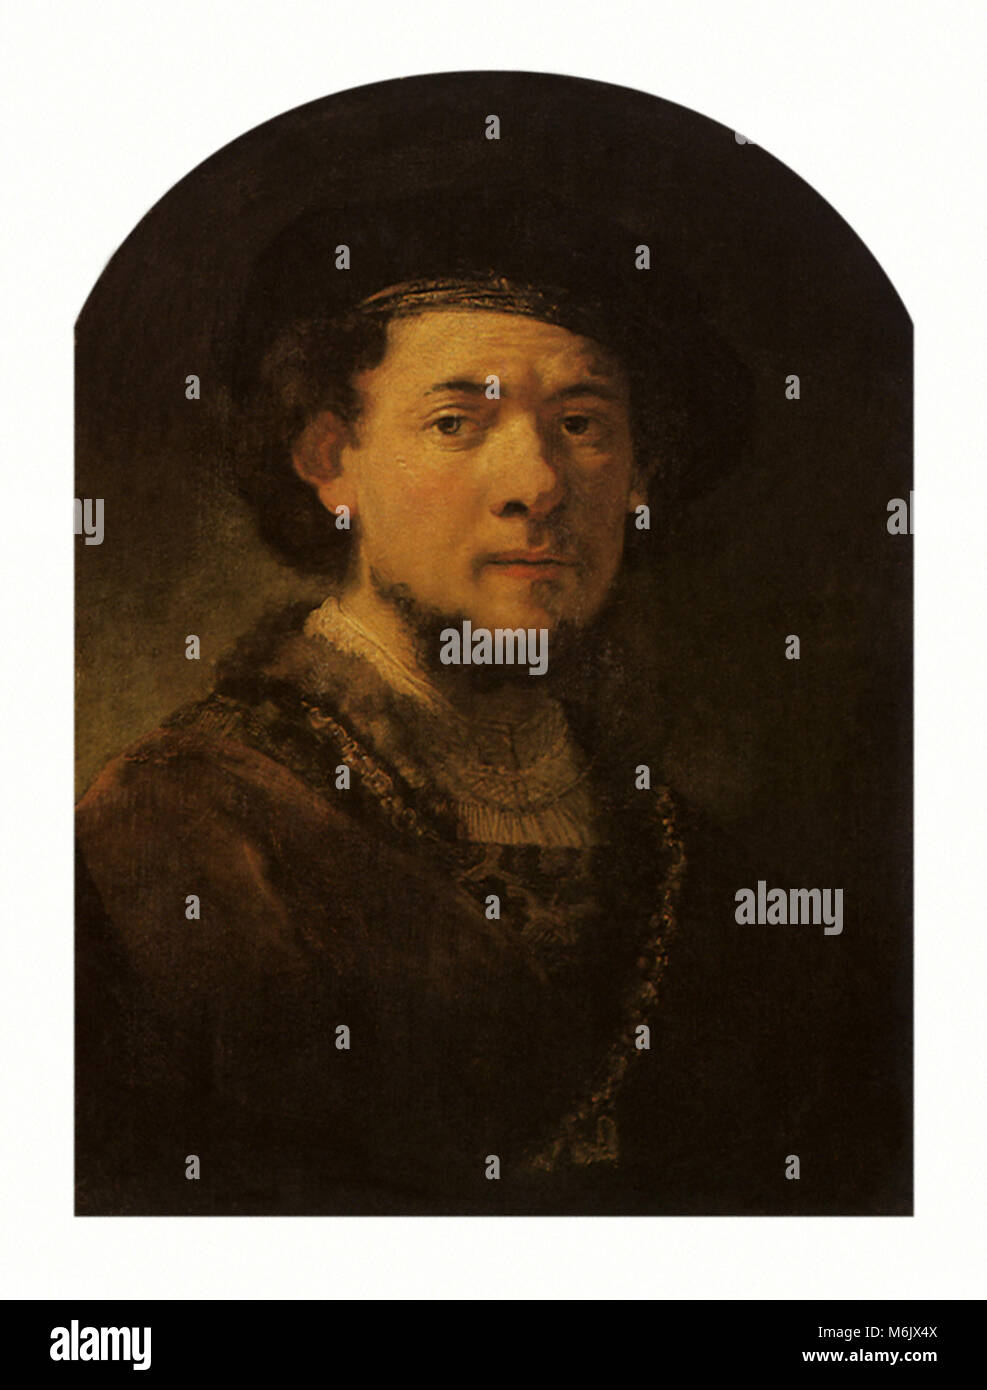 Portrait de Rembrandt, Flinck, Govaert, 1640. Banque D'Images